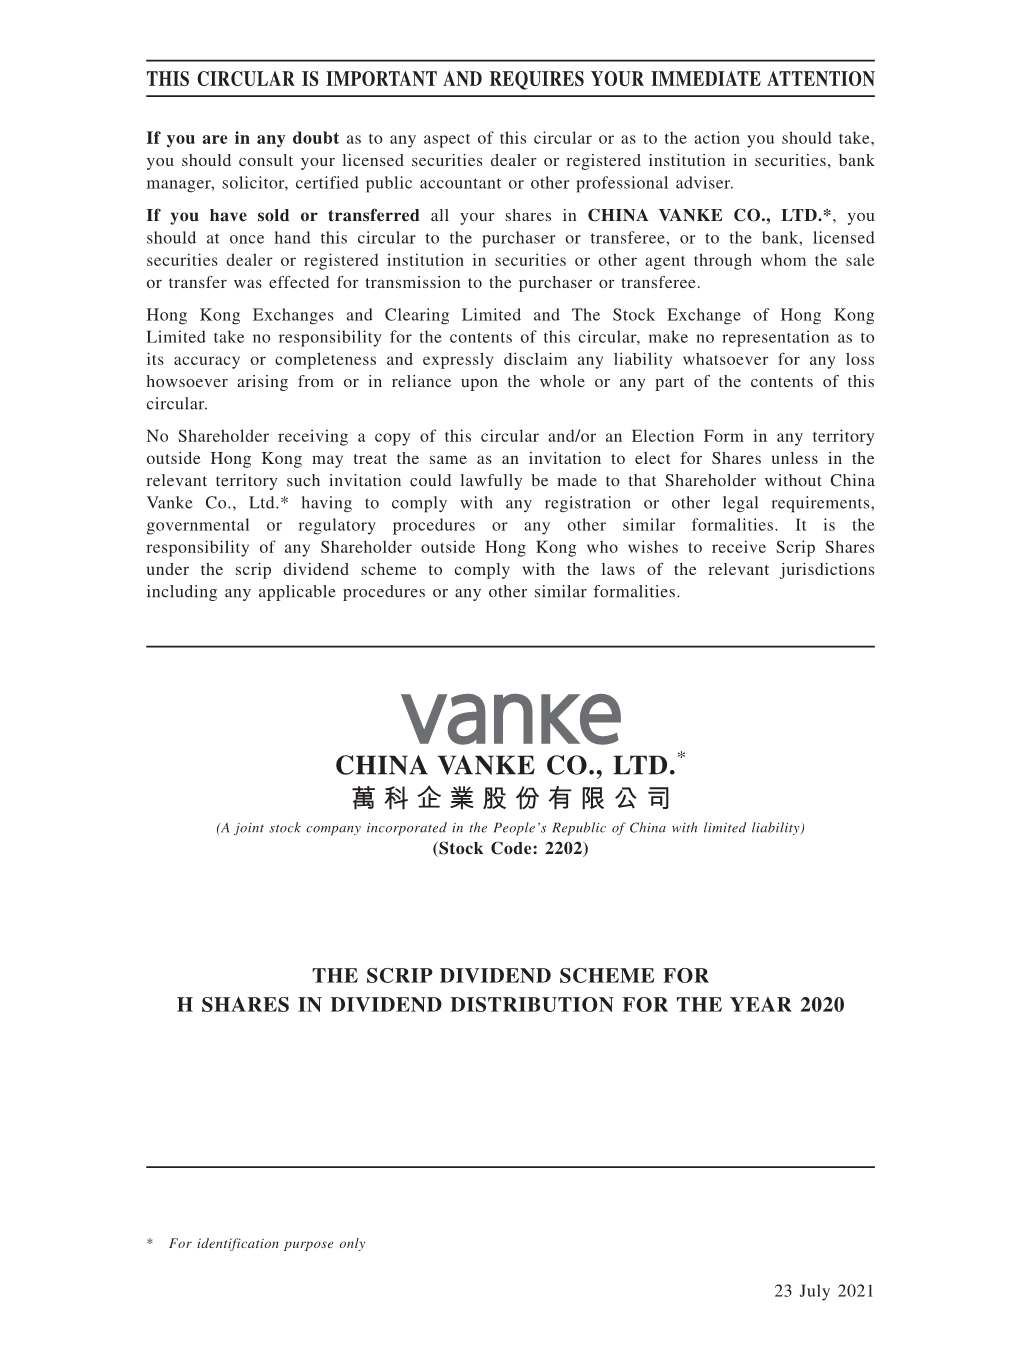 China Vanke Co., Ltd.*